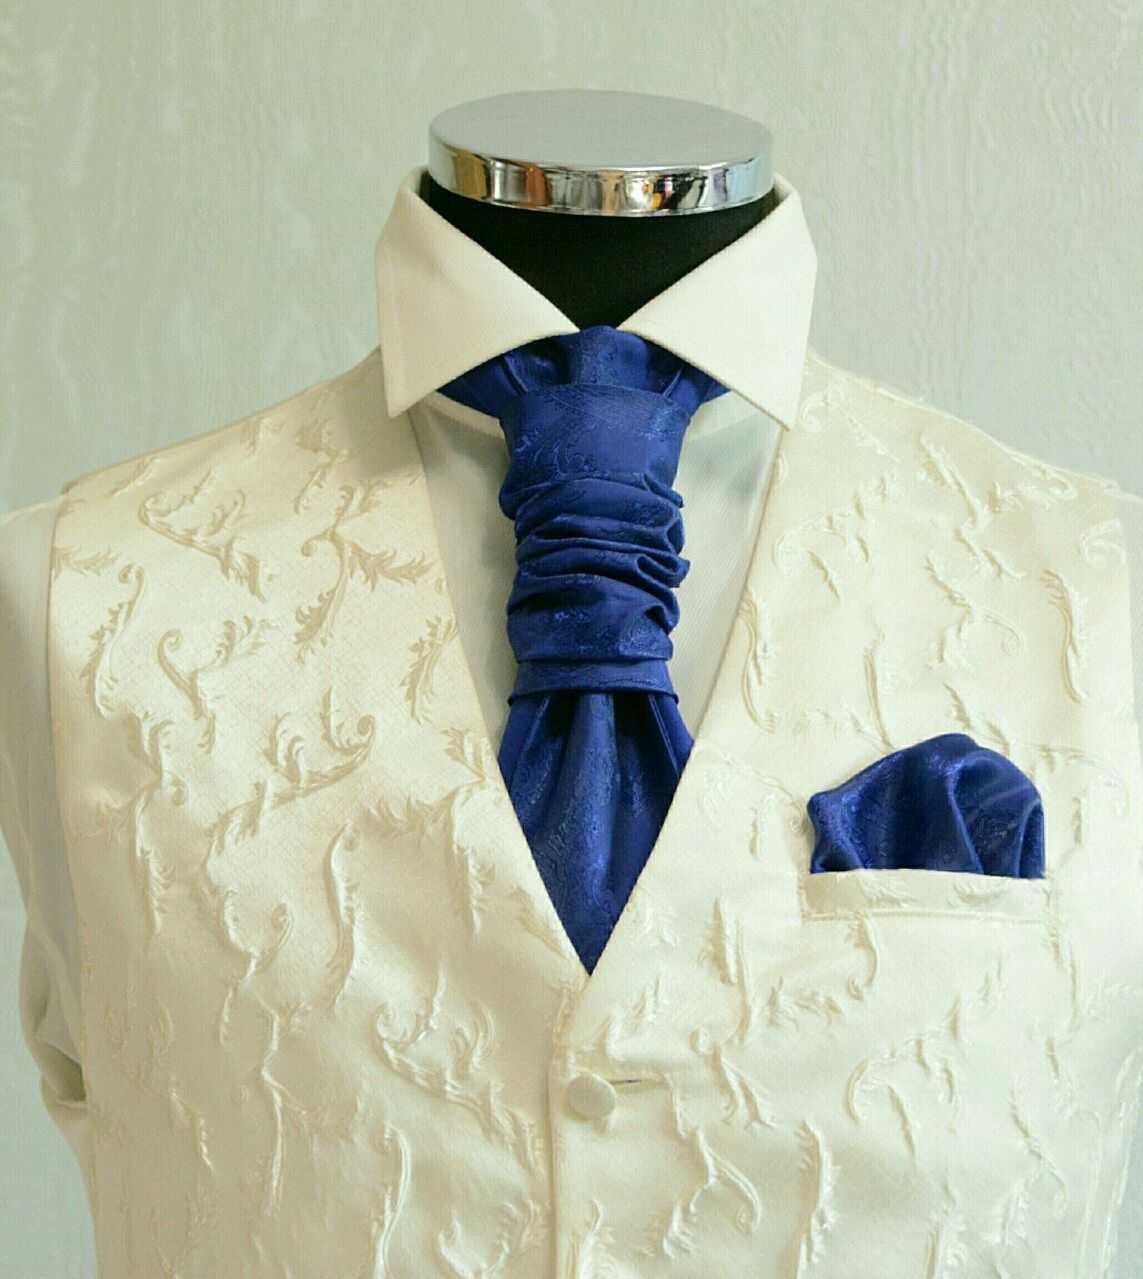 Длина галстука по этикету у мужчин: требования этикета и рекомендации стилистов